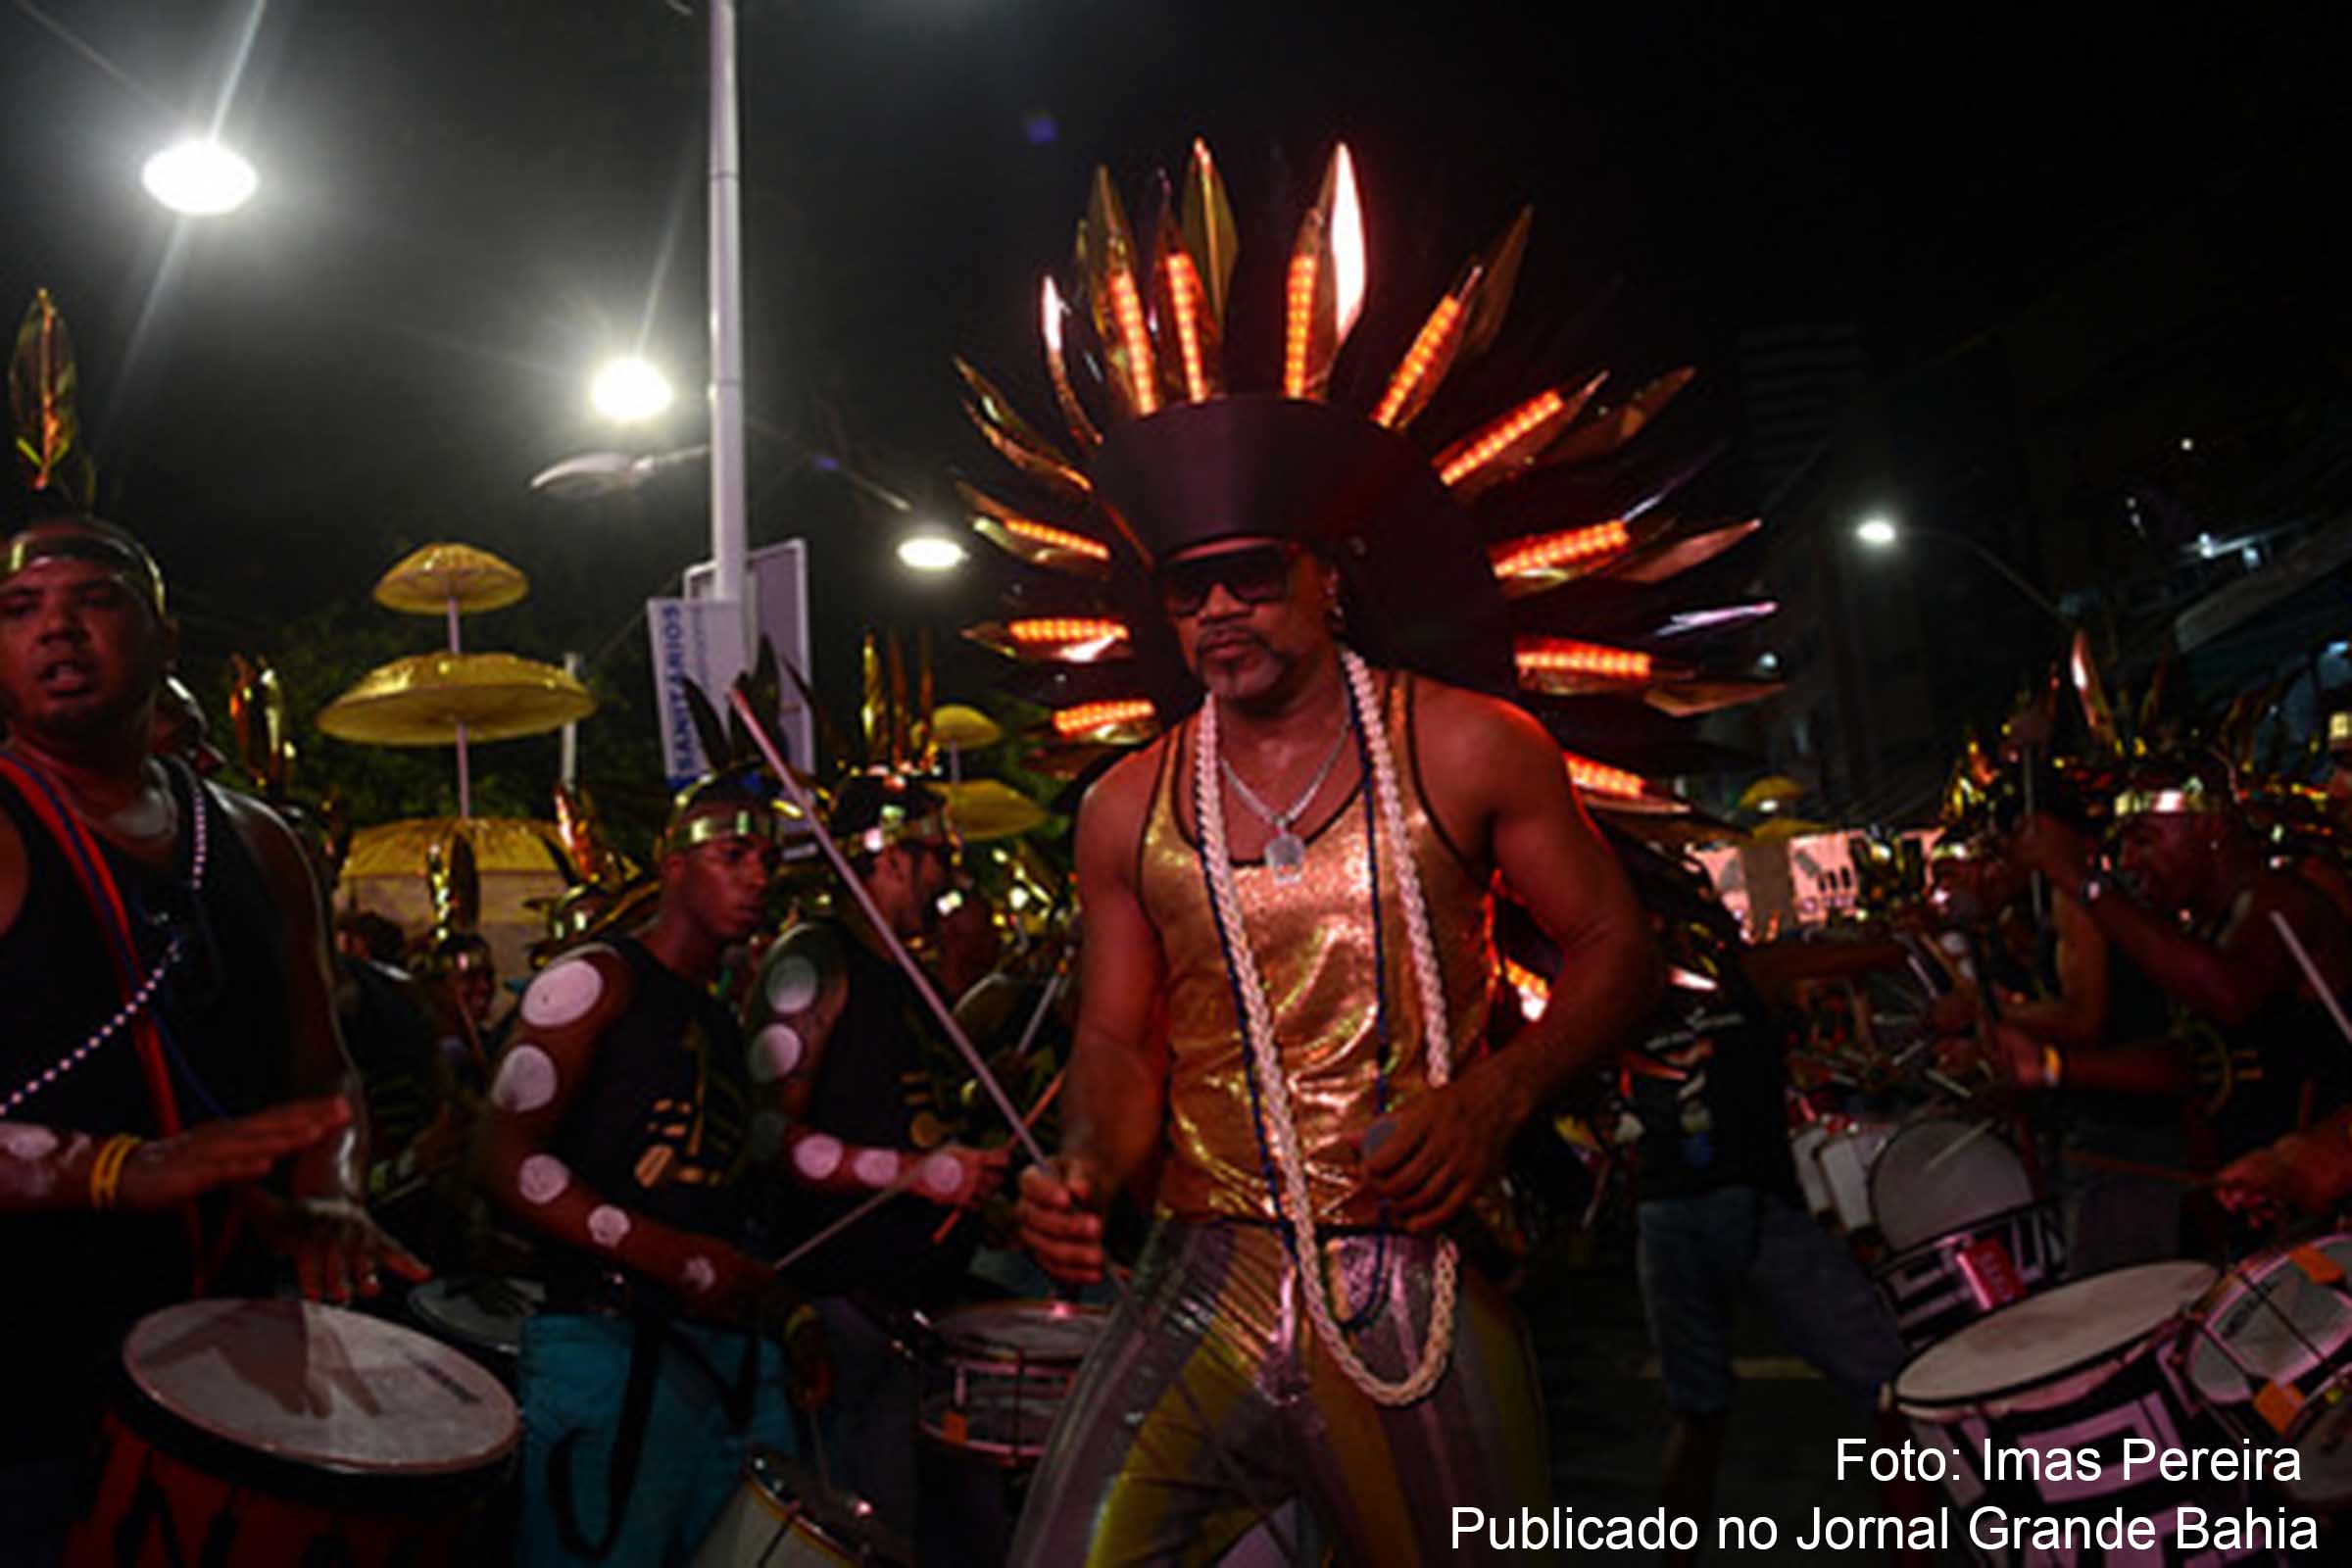 Carlinhos Brown encerra sua participação no Carnaval de Salvador com dois projetos: Camarote Andante e Descidão – Bateria Sustentável.